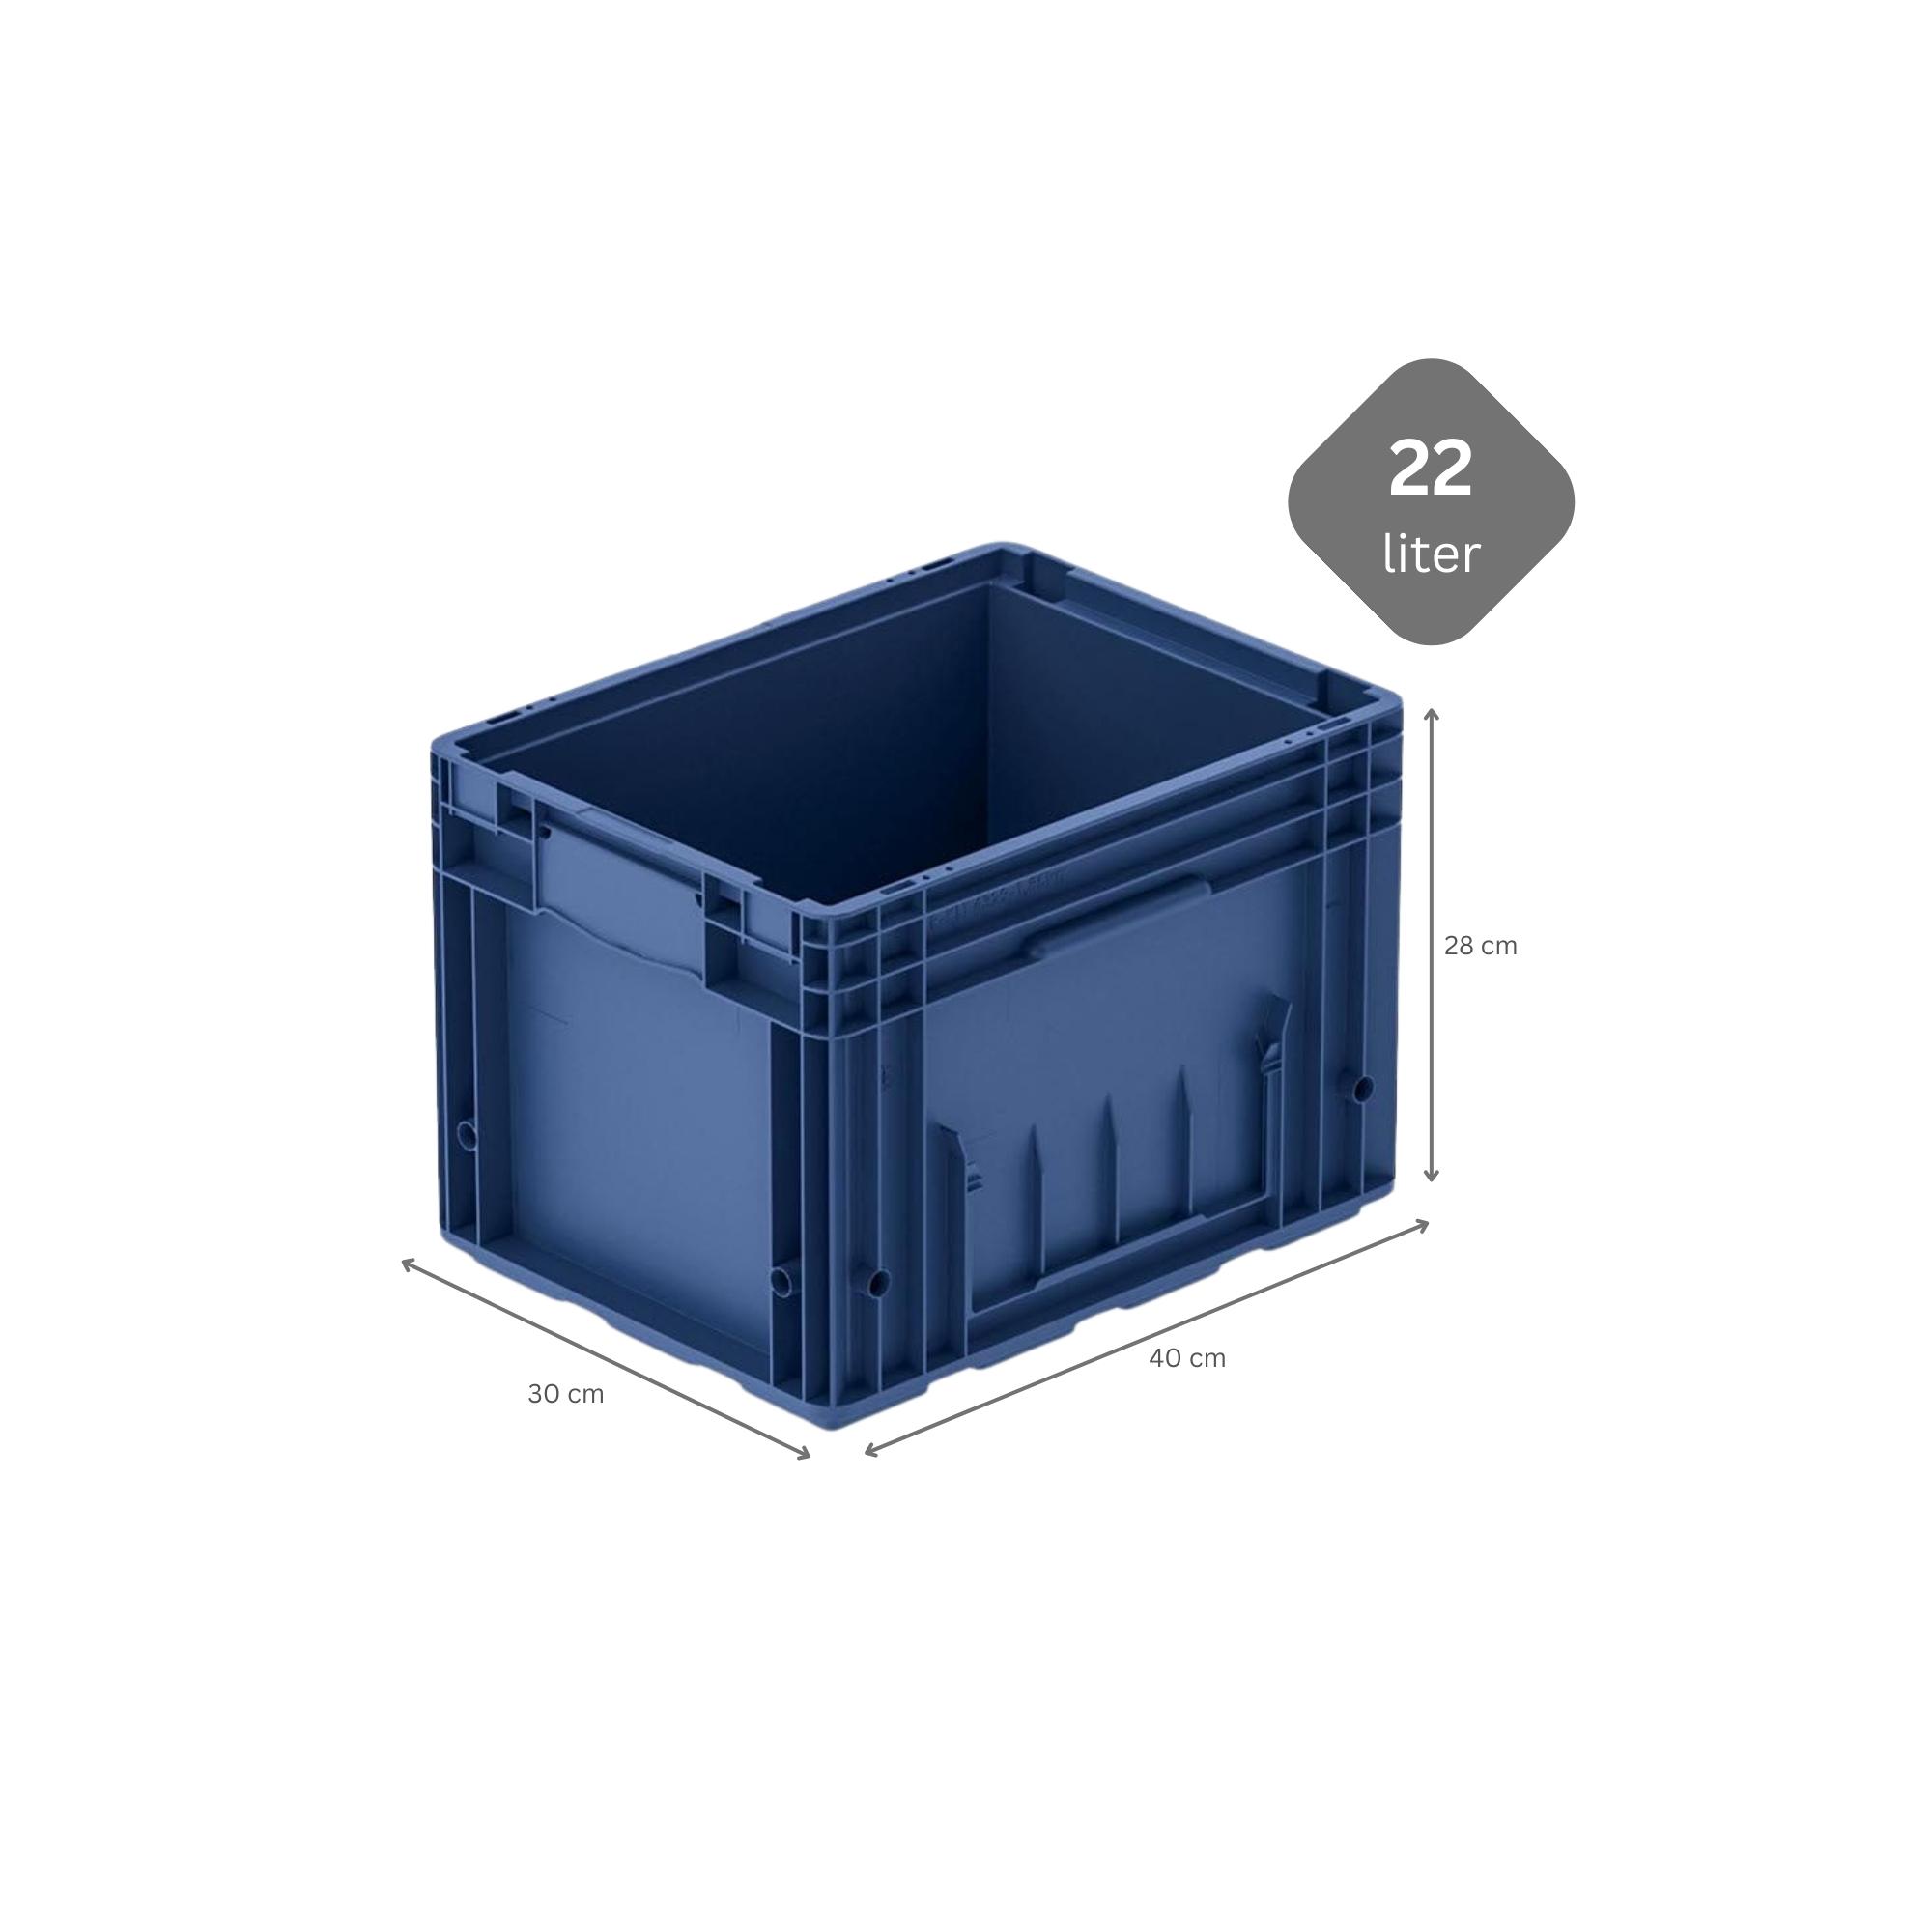 SparSet 5x VDA KLT Kleinladungsträger mit Verbundboden | HxBxT 28x30x40cm | 22 Liter | KLT, Transportbox, Transportbehälter, Stapelbehälter